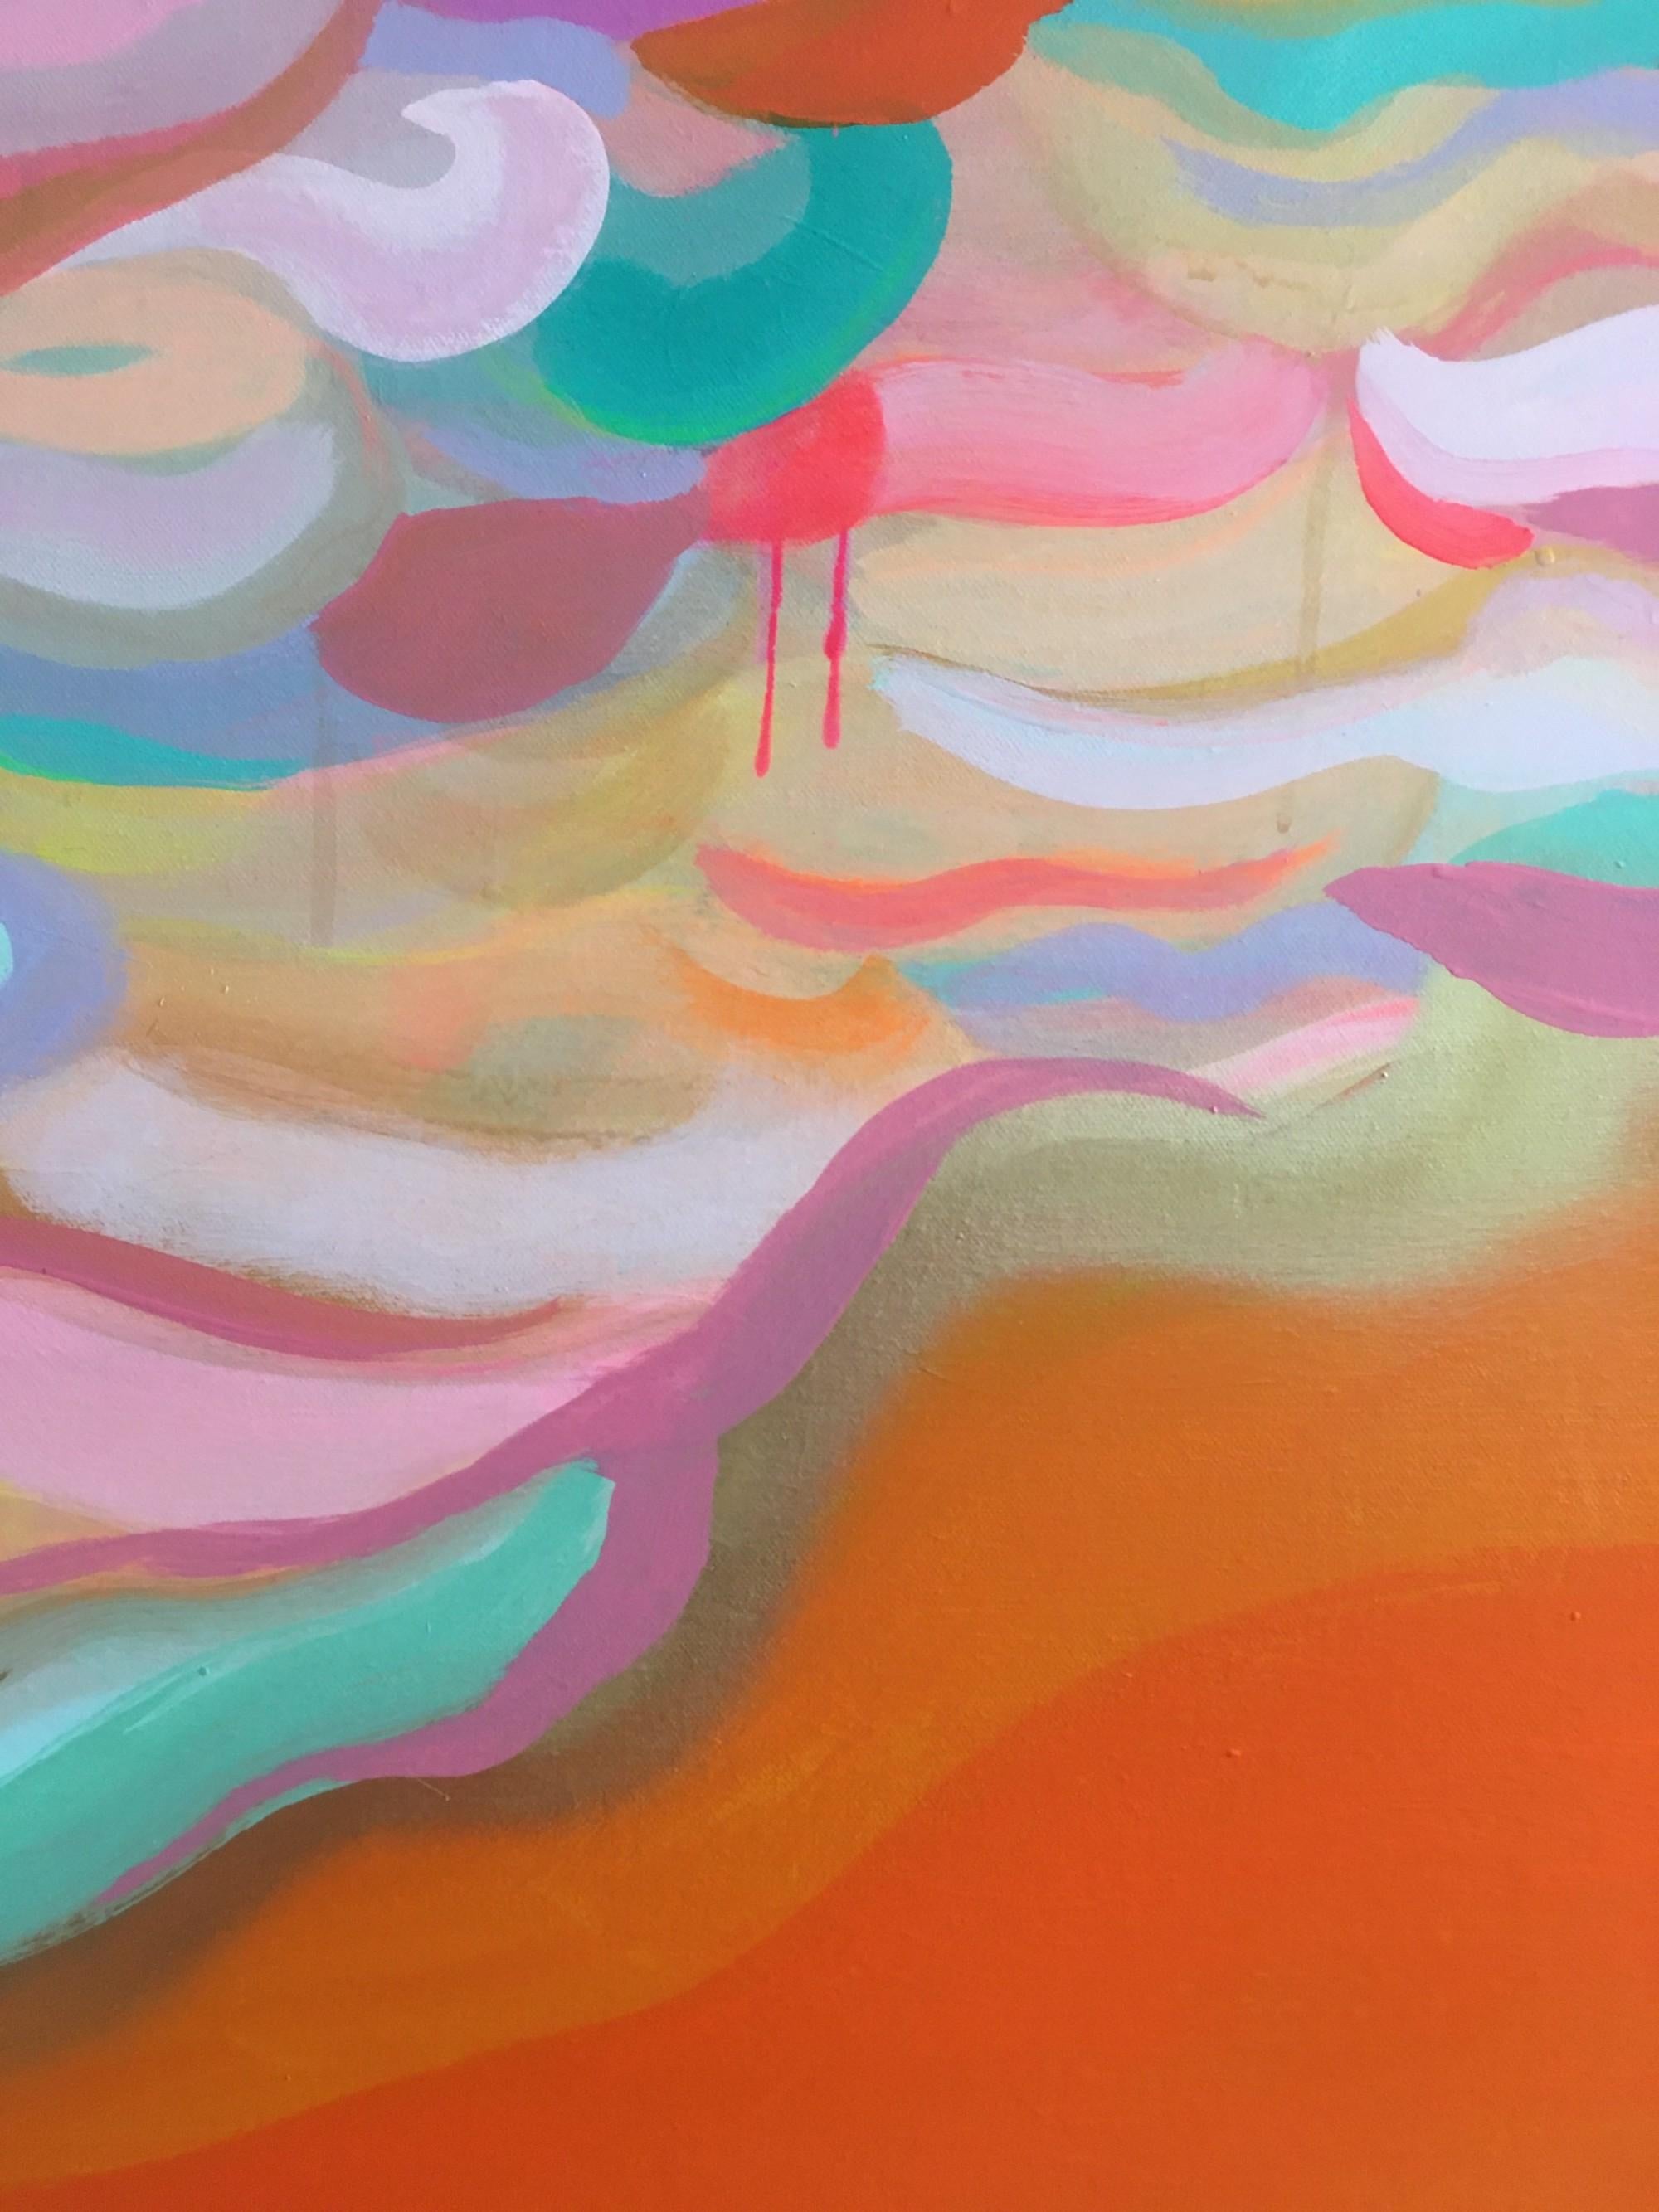 Abstrait joyeux inspiré par les magnifiques ciels crépusculaires au-dessus de la jetée ouest de Murmure à marée basse, après les murmurations d'étourneaux.
Tiffany Lynch, graveur et artiste, est disponible à la vente en ligne et dans notre galerie